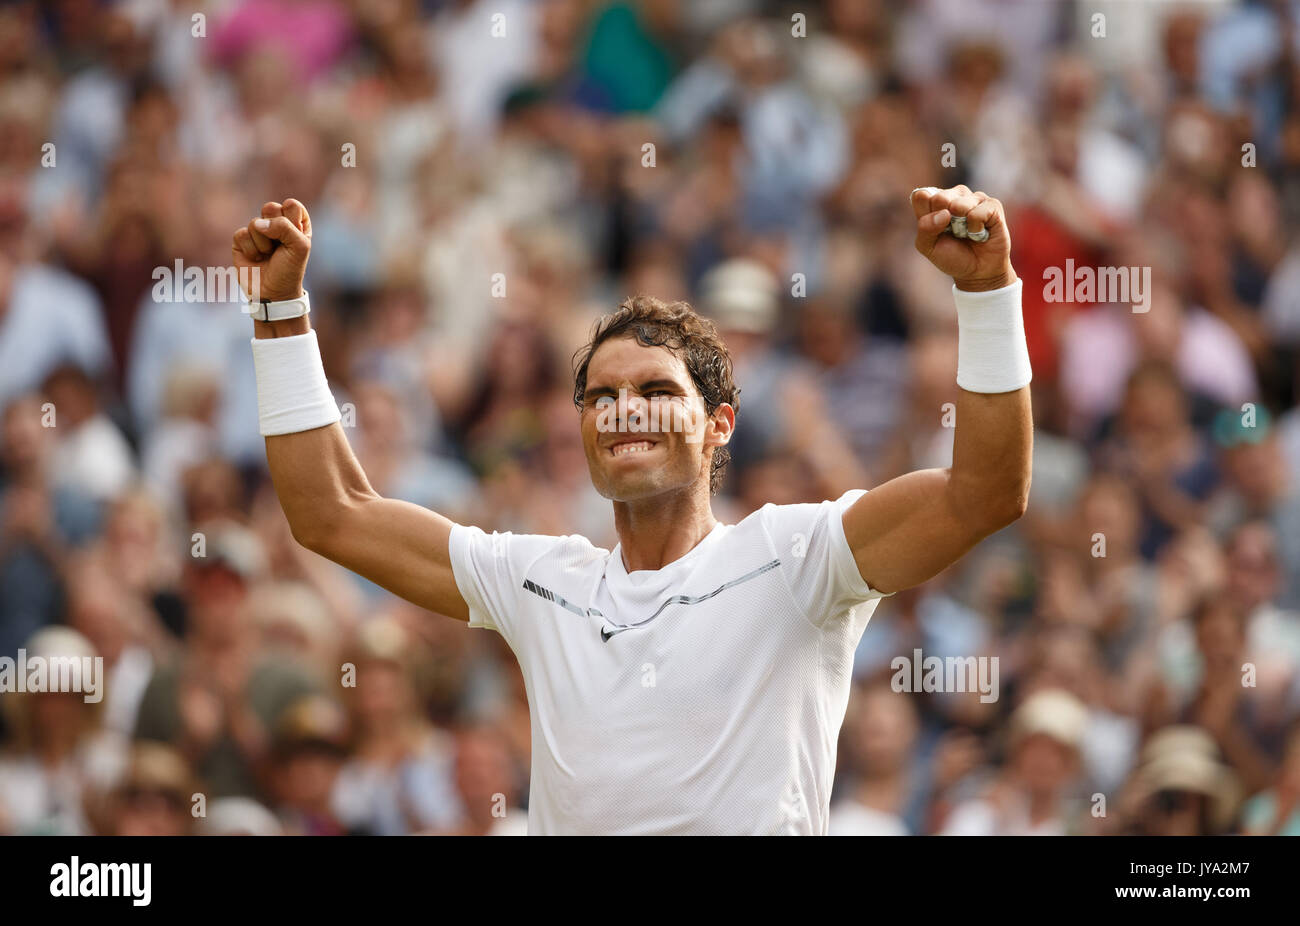 Rafael Nadal s'étire les bras et des acclamations après sa victoire à Wimbledon Tennis Championships 2017, Londres, Angleterre, Royaume-Uni. Banque D'Images